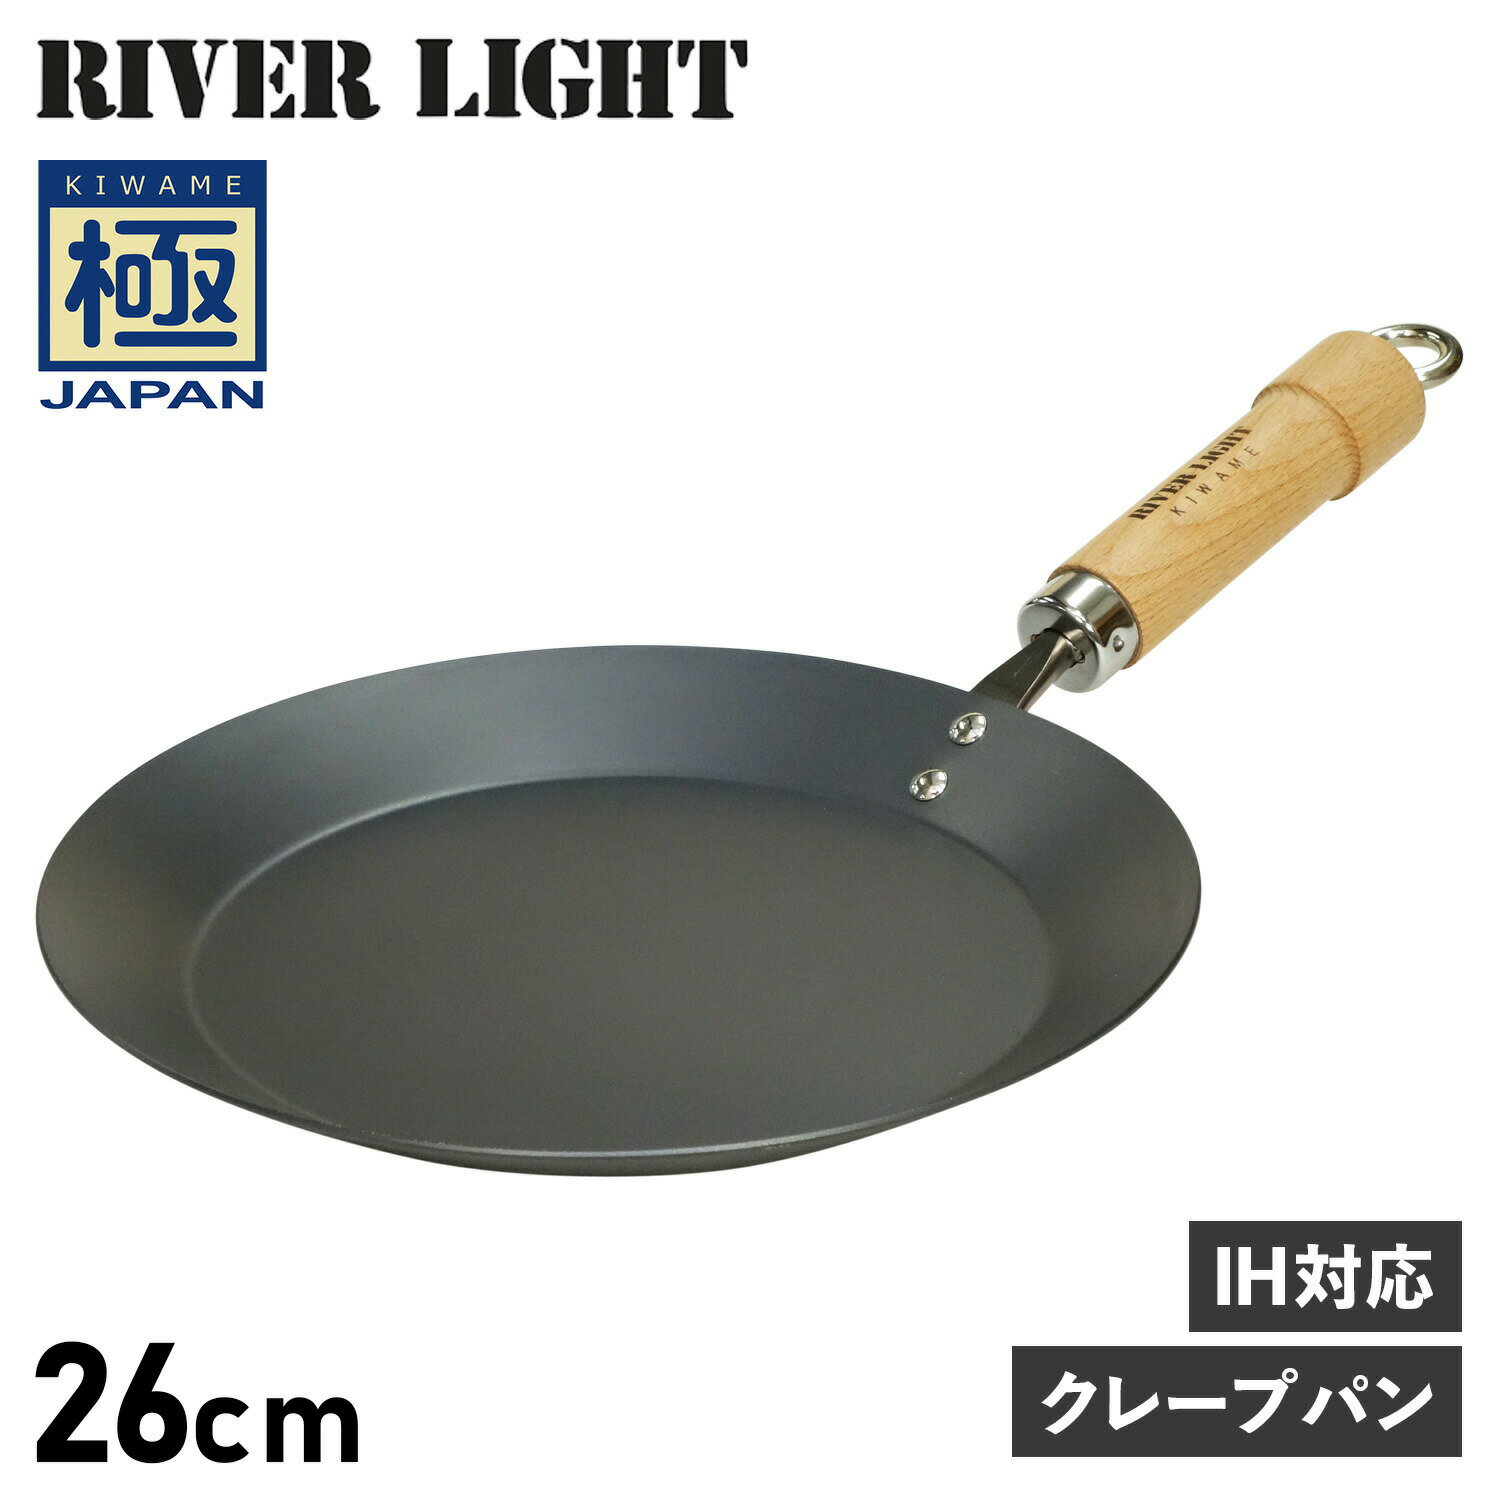 RIVER LIGHT 極JAPAN リバーライト 極 クレープメーカー クレープパン フライパン 26cm IH ガス対応 鉄 J1726 アウトドア